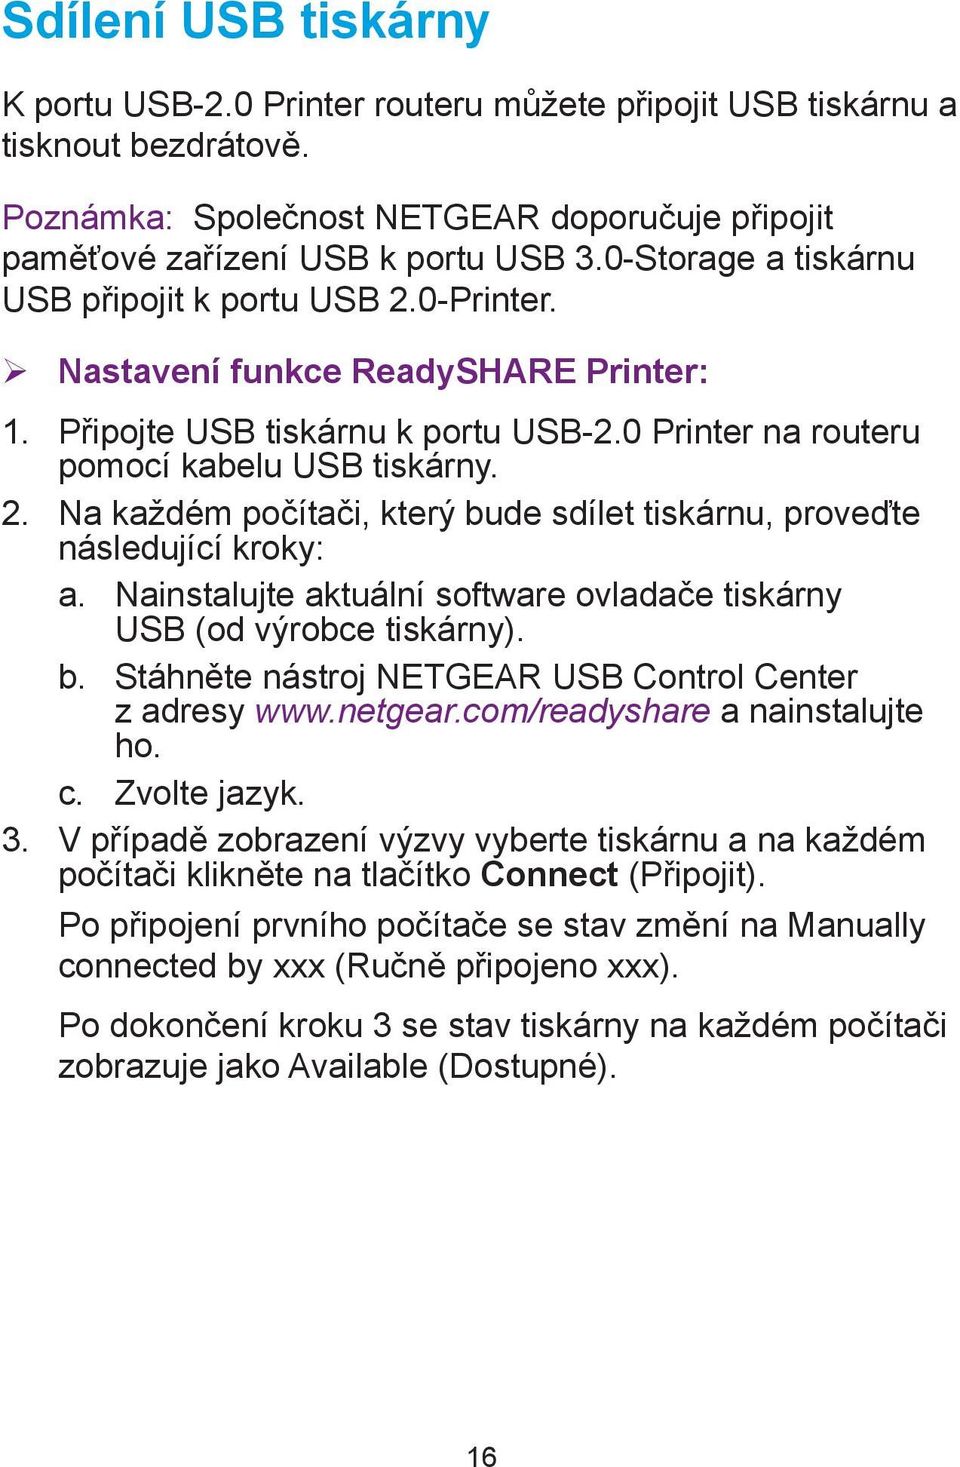 Nainstalujte aktuální software ovladače tiskárny USB (od výrobce tiskárny). b. Stáhněte nástroj NETGEAR USB Control Center z adresy www.netgear.com/readyshare a nainstalujte ho. c. Zvolte jazyk. 3.